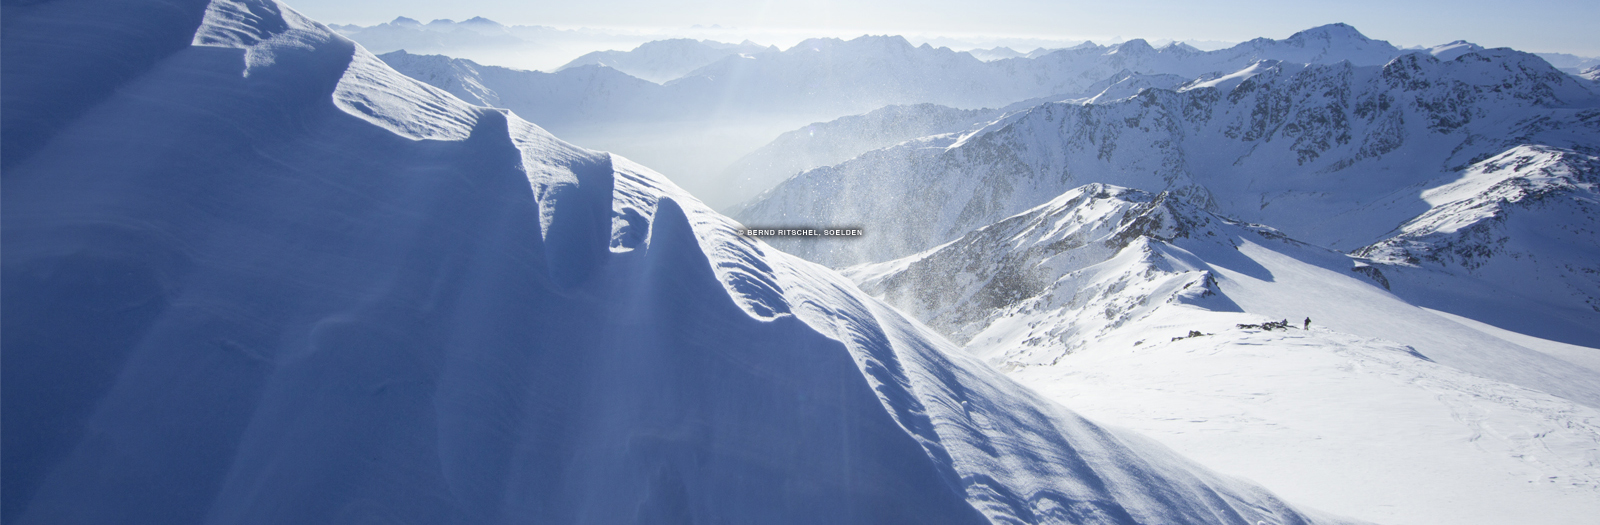 Sölden Ski Resort, solden austria, solden, soelden austria